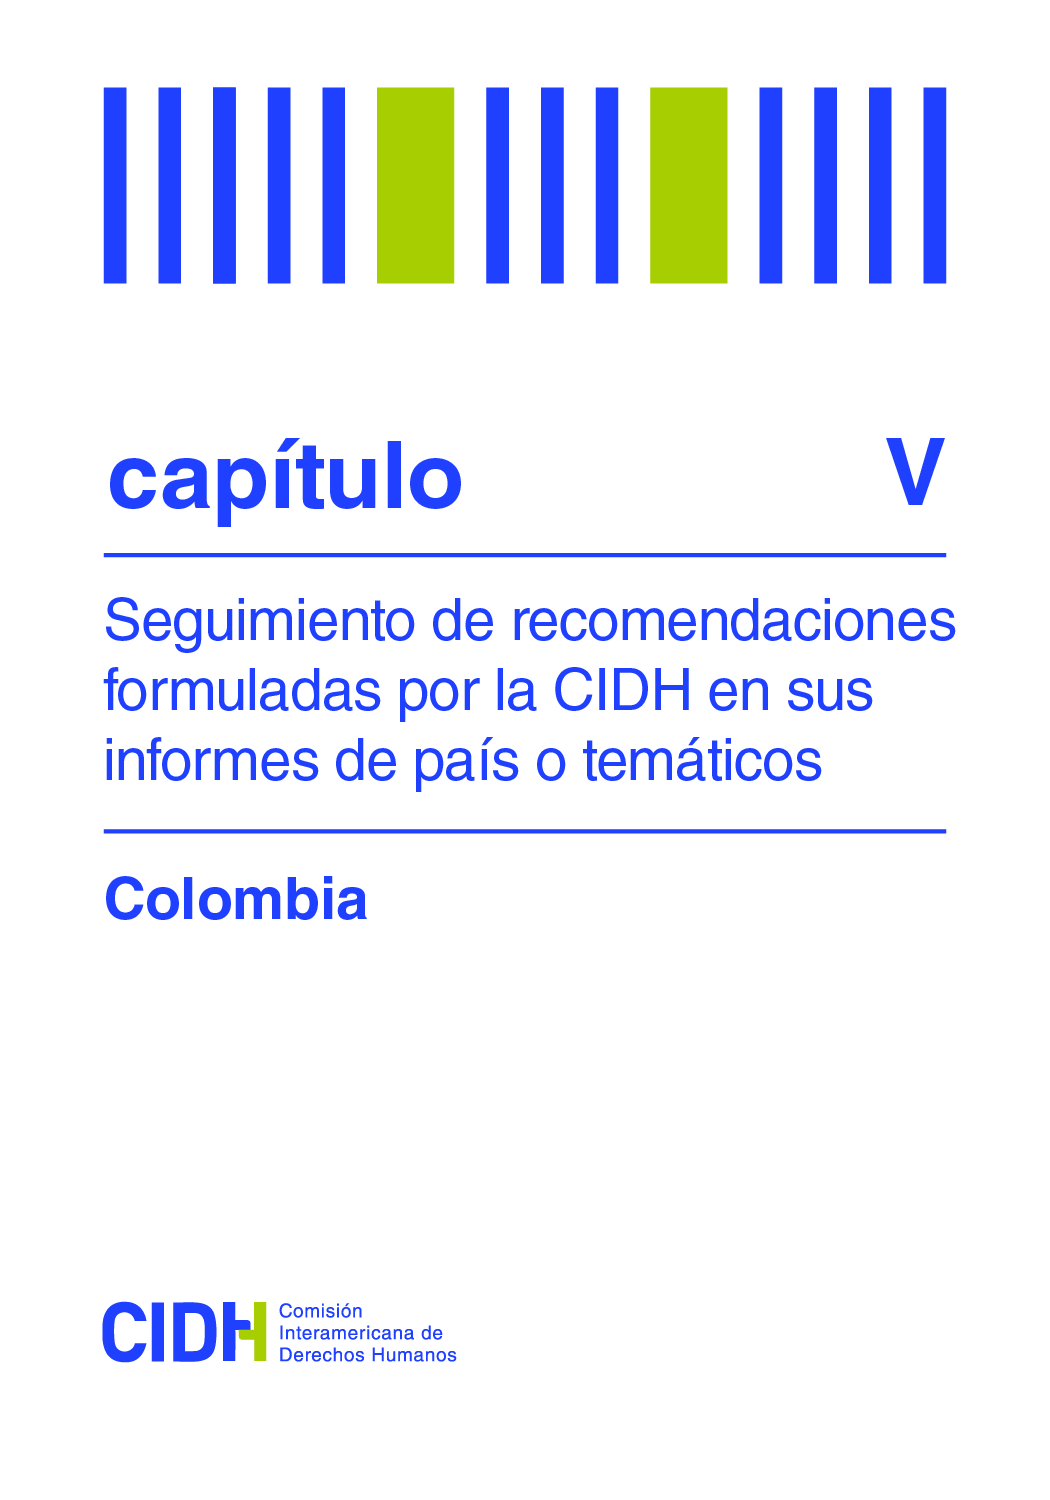 Seguimiento de recomendaciones formuladas por la CIDH en el Informe Verdad, Justicia y Reparación: Sexto Informe sobre la situación de Derechos Humanos en Colombia